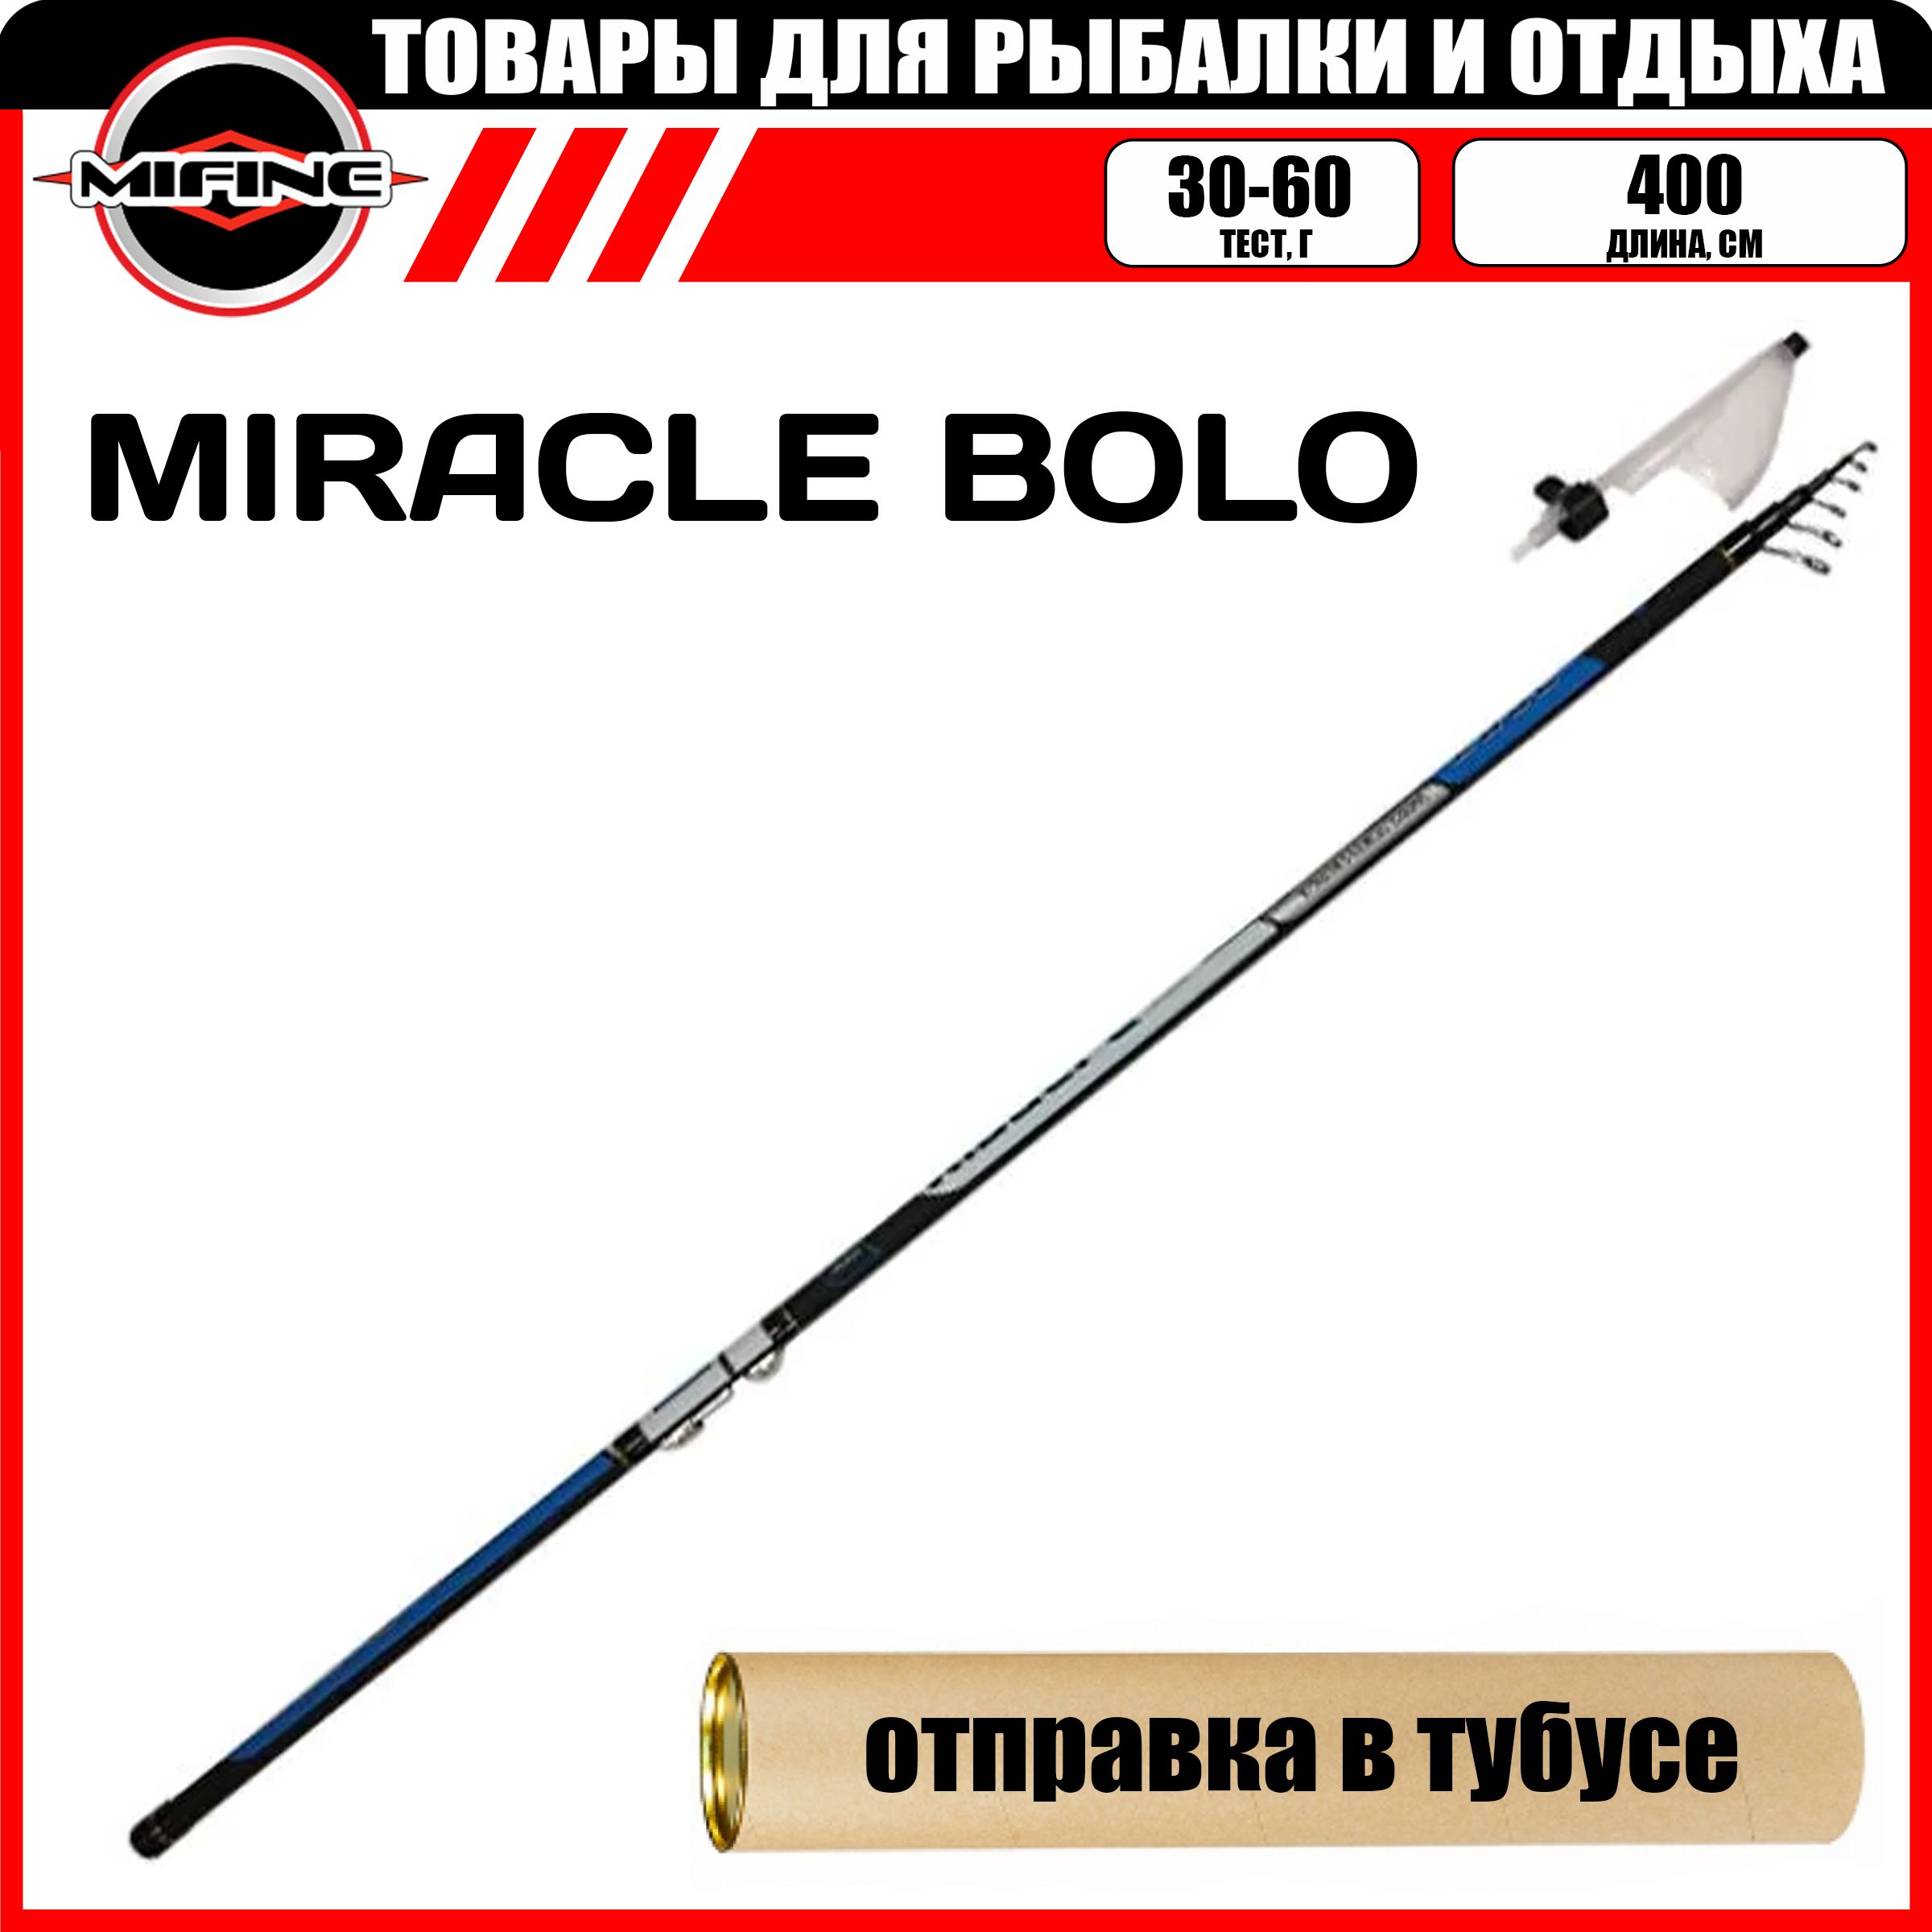 Удилище рыболовное MIFINE MIRACLE Bolo 4.0м (30-60гр) С,К, маховая удочка для рыбалки